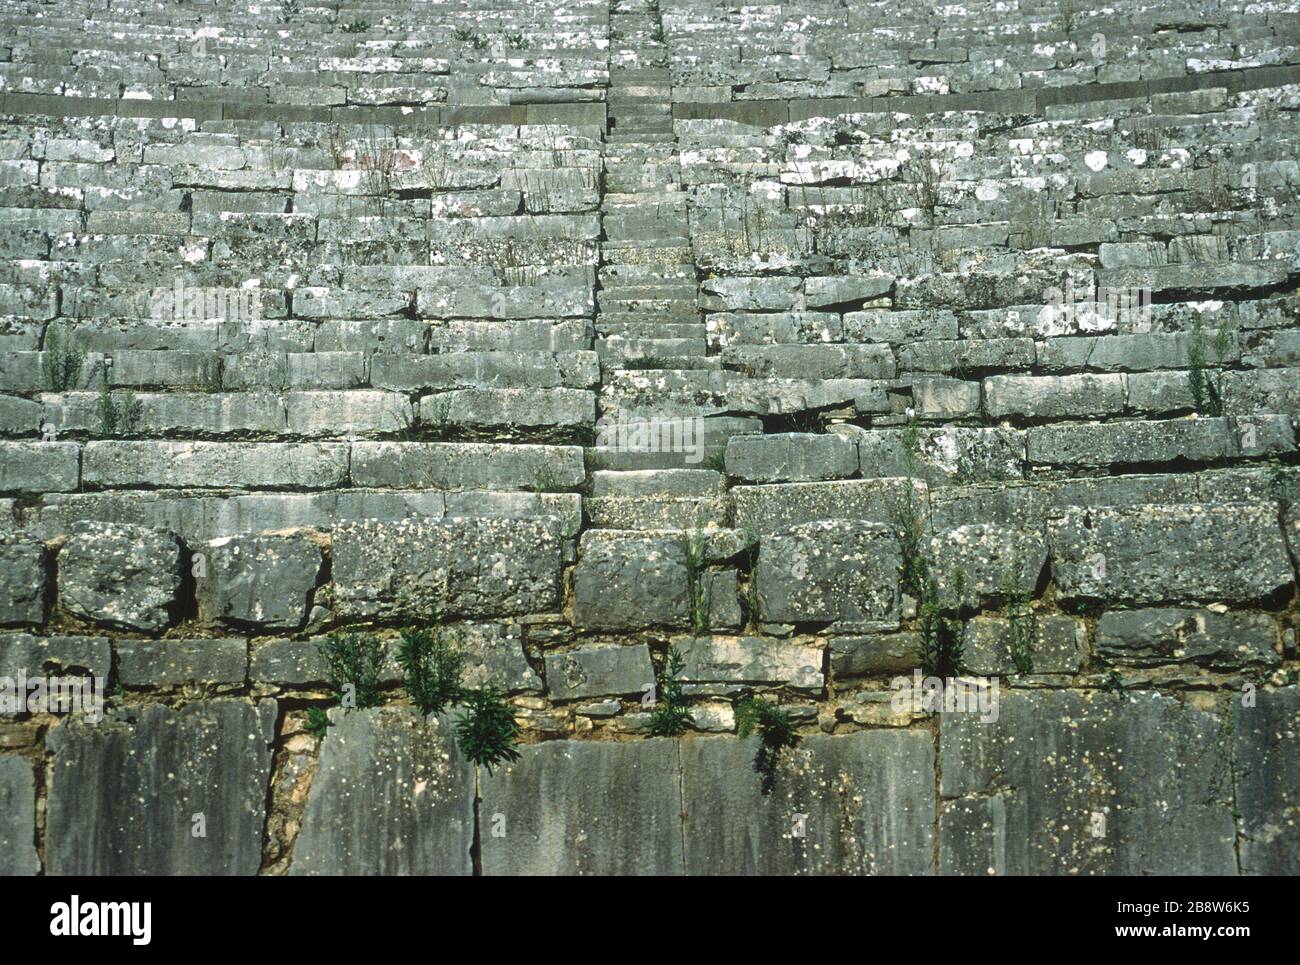 Vista dettagliata dell'antico teatro greco di Dodoni, Ioannina, Epiro, Grecia, con file curve di sedili in pietra che si guardano verso il basso sul palcoscenico e scalino fino ad ogni livello. Dodoni è uno dei 15 teatri dell'antica Grecia, con lo status di patrimonio dell'umanità dell'UNESCO. Foto Stock